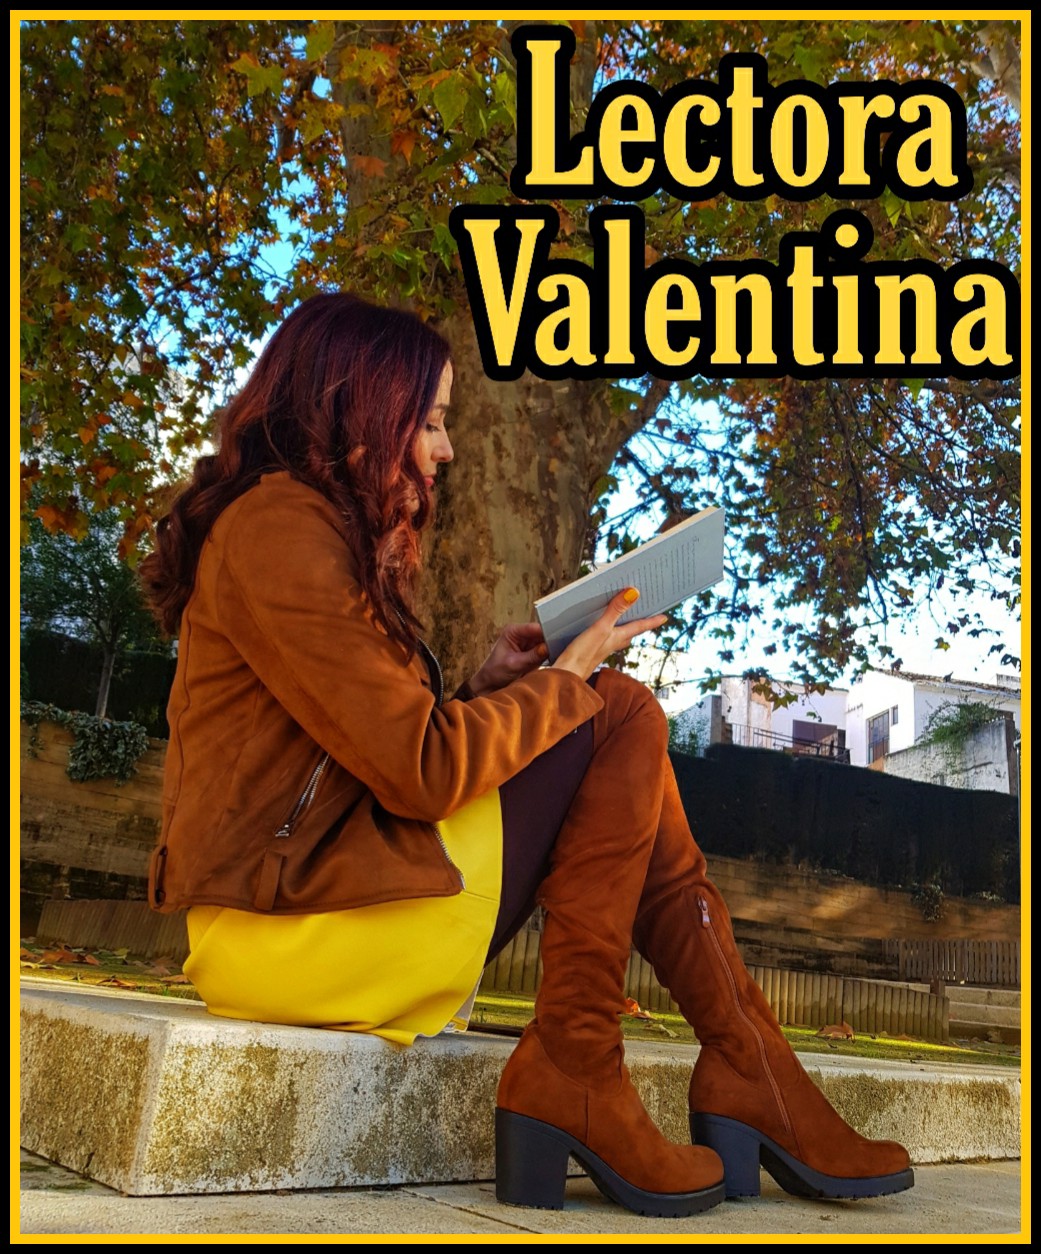 Lectora Valentina